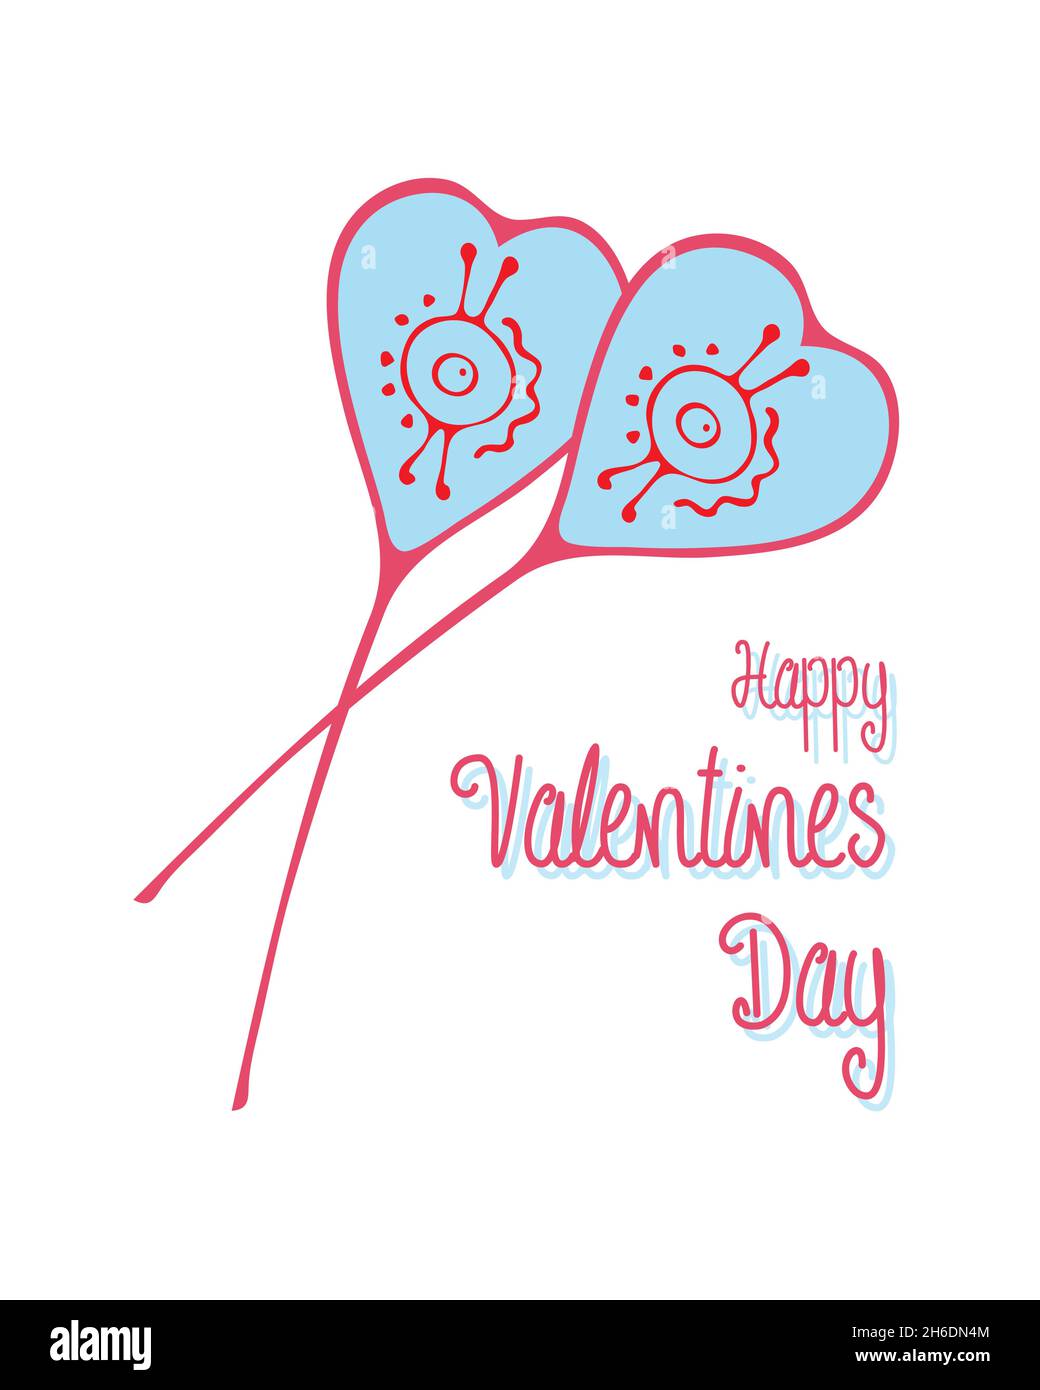 Buon San Valentino illustrazione giorno con cuori scarabocchi, cartolina, congratulazioni, amore, passione. Isolato. Sfondo bianco. Illustrazione vettoriale Illustrazione Vettoriale